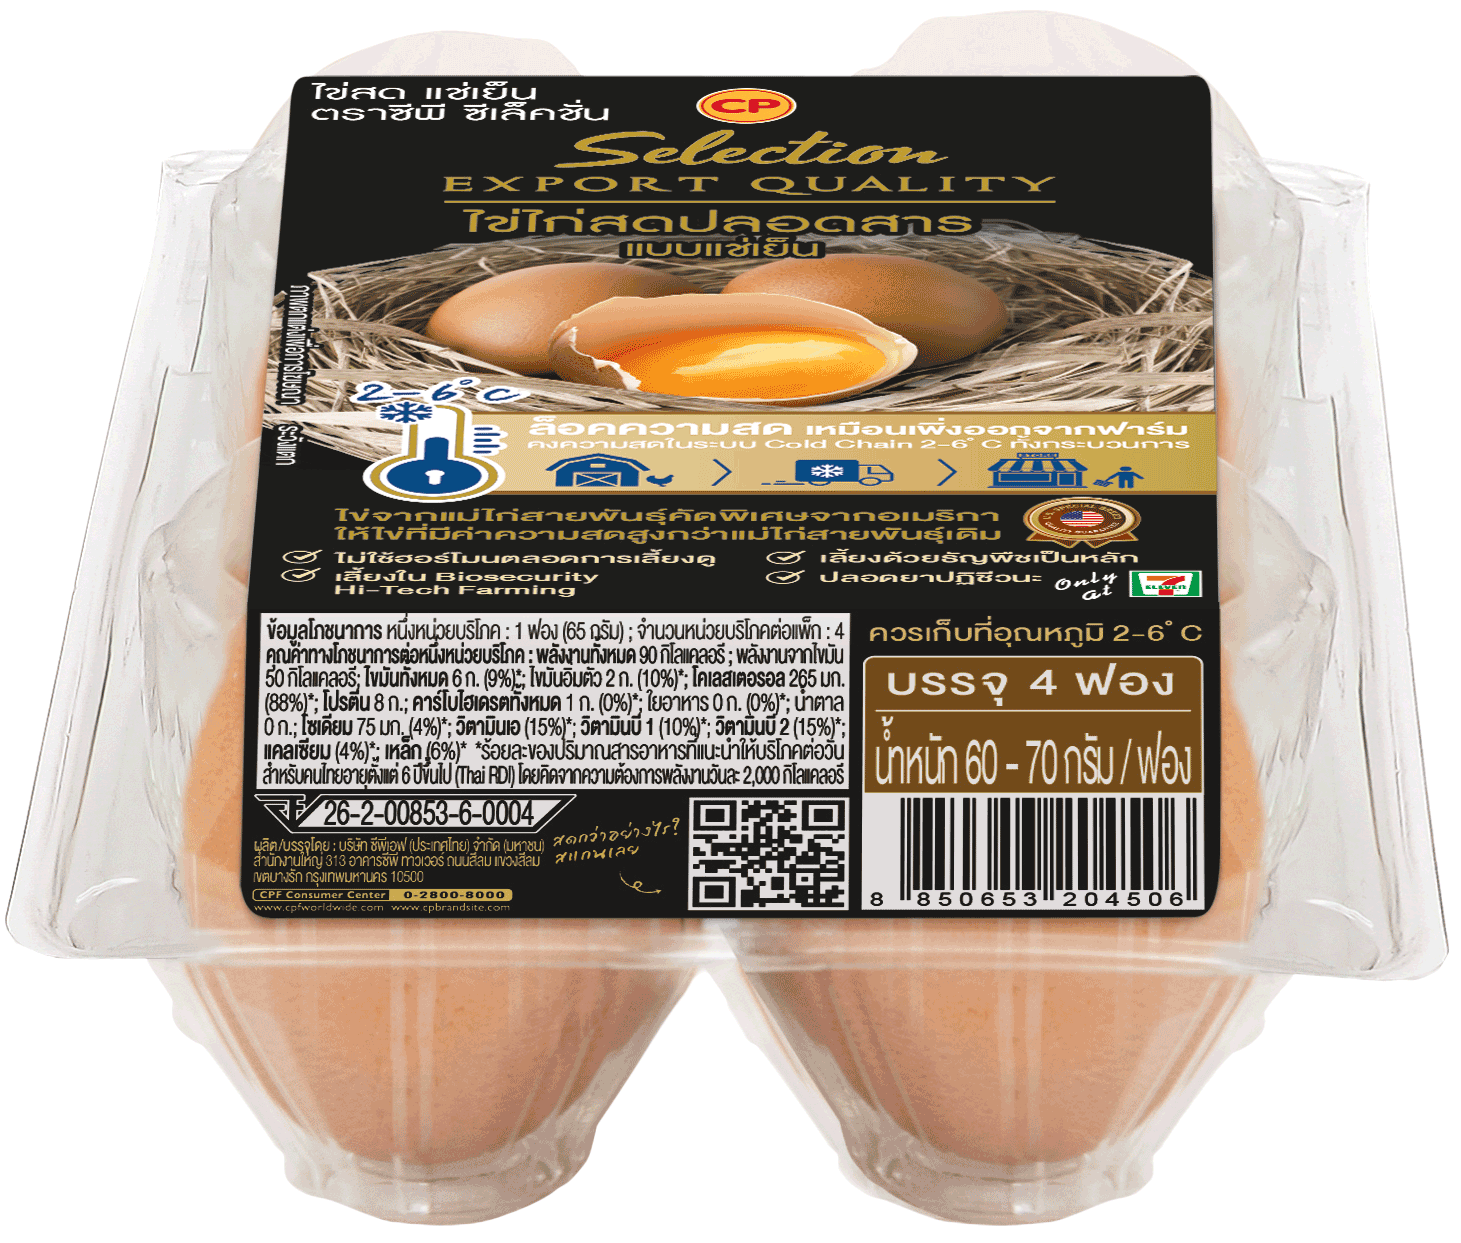 ไข่ไก่สดปลอดสาร (แบบแช่เย็น) ตราซีพี ซีเล็คชั่น